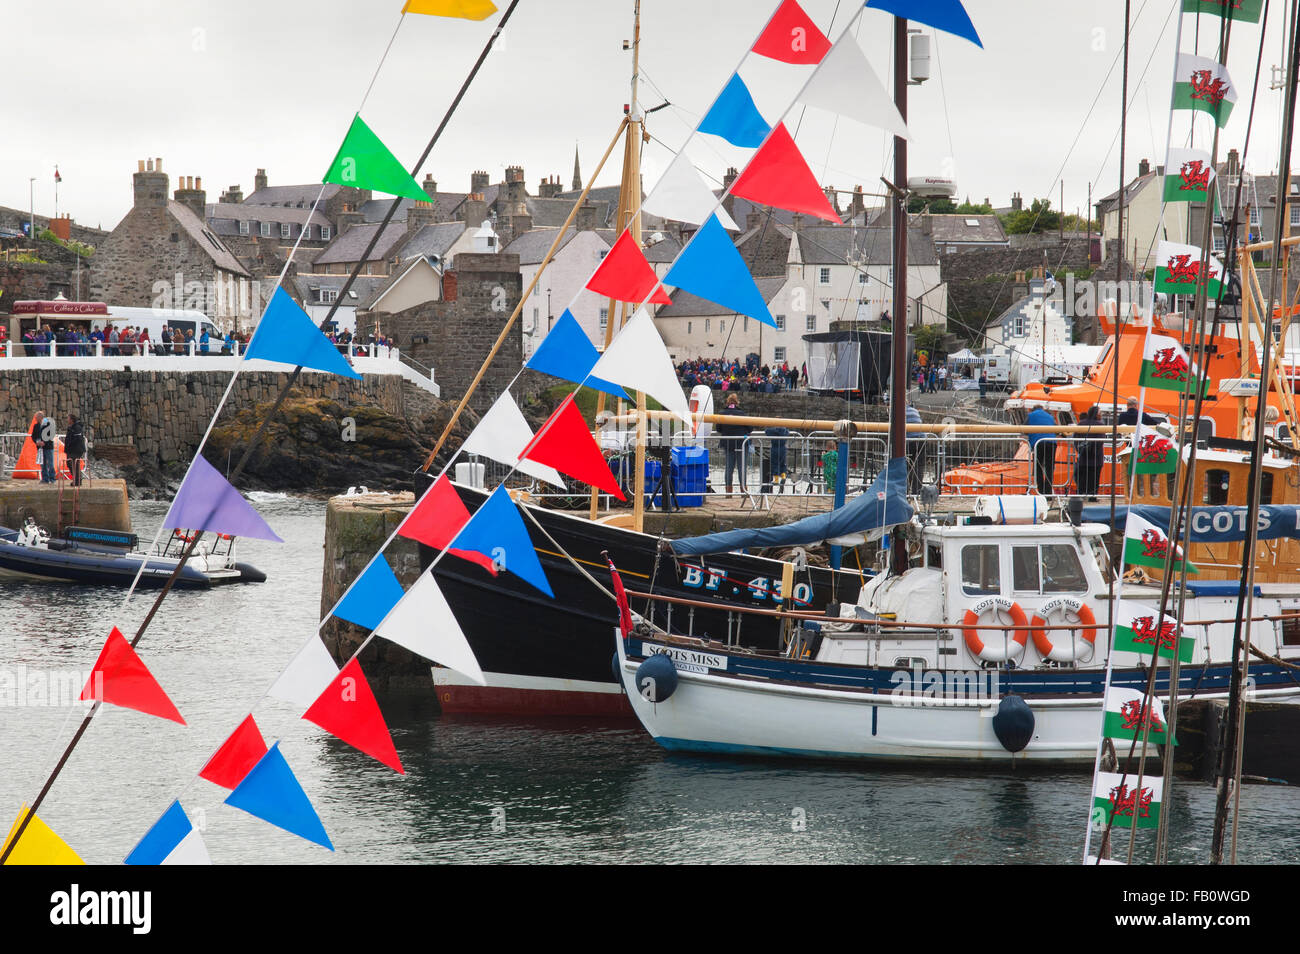 Le Festival du bateau traditionnel écossais à Portsoy - Aberdeenshire, en Écosse. Banque D'Images